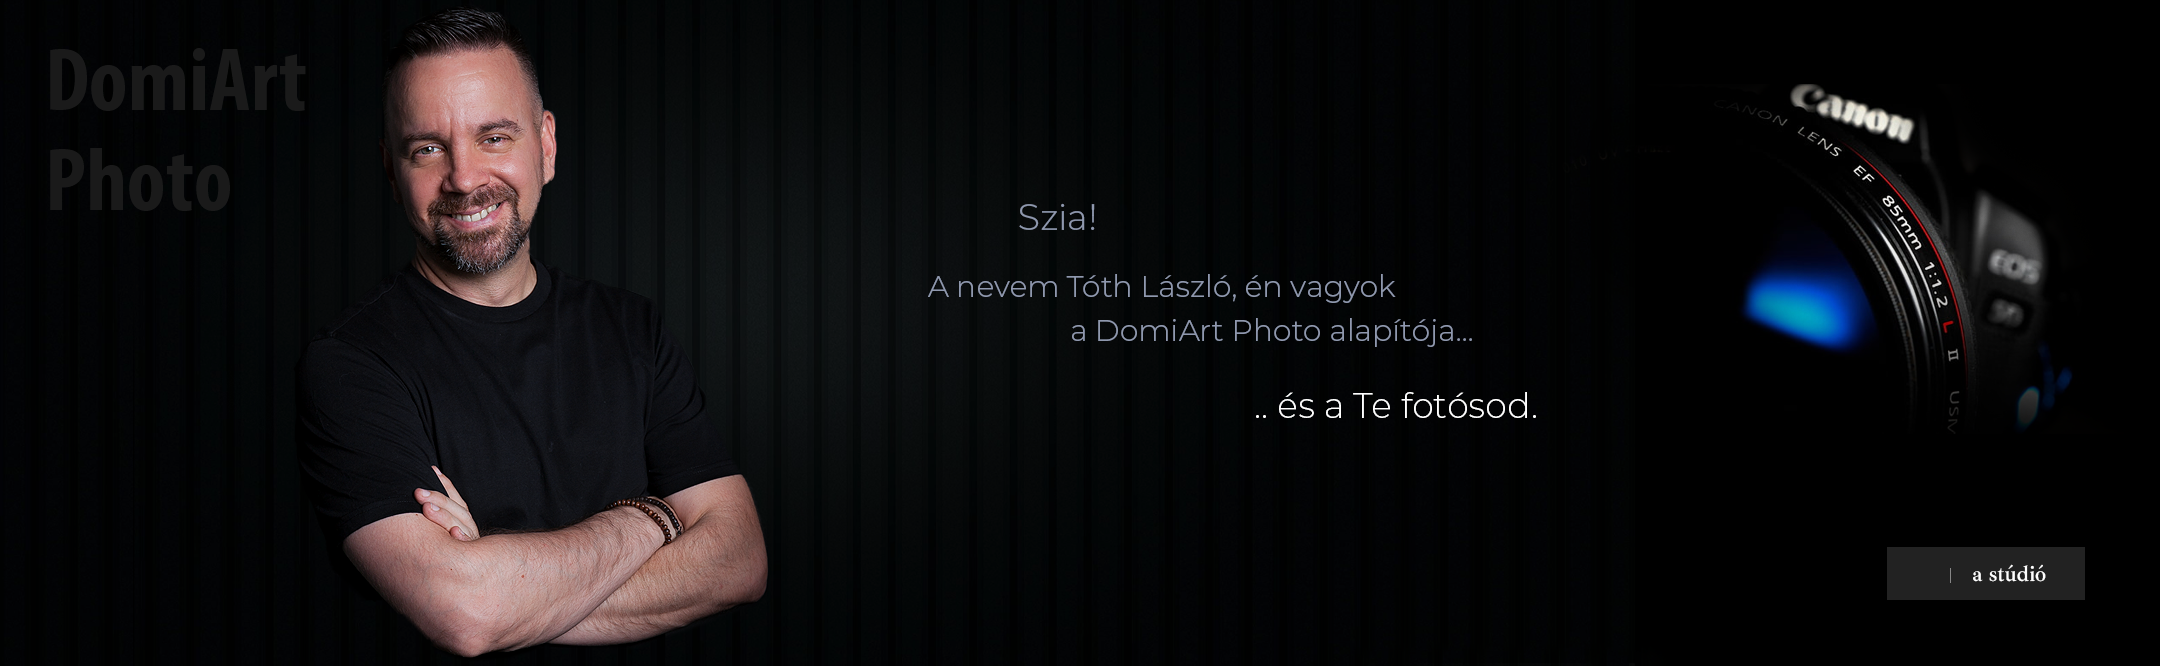 profi fotós Debrecen - fekete hátteres kép, ahol a fotós karbatett kézzel mosolyog, jobb oldalt pedig egy Canon 5D látható.